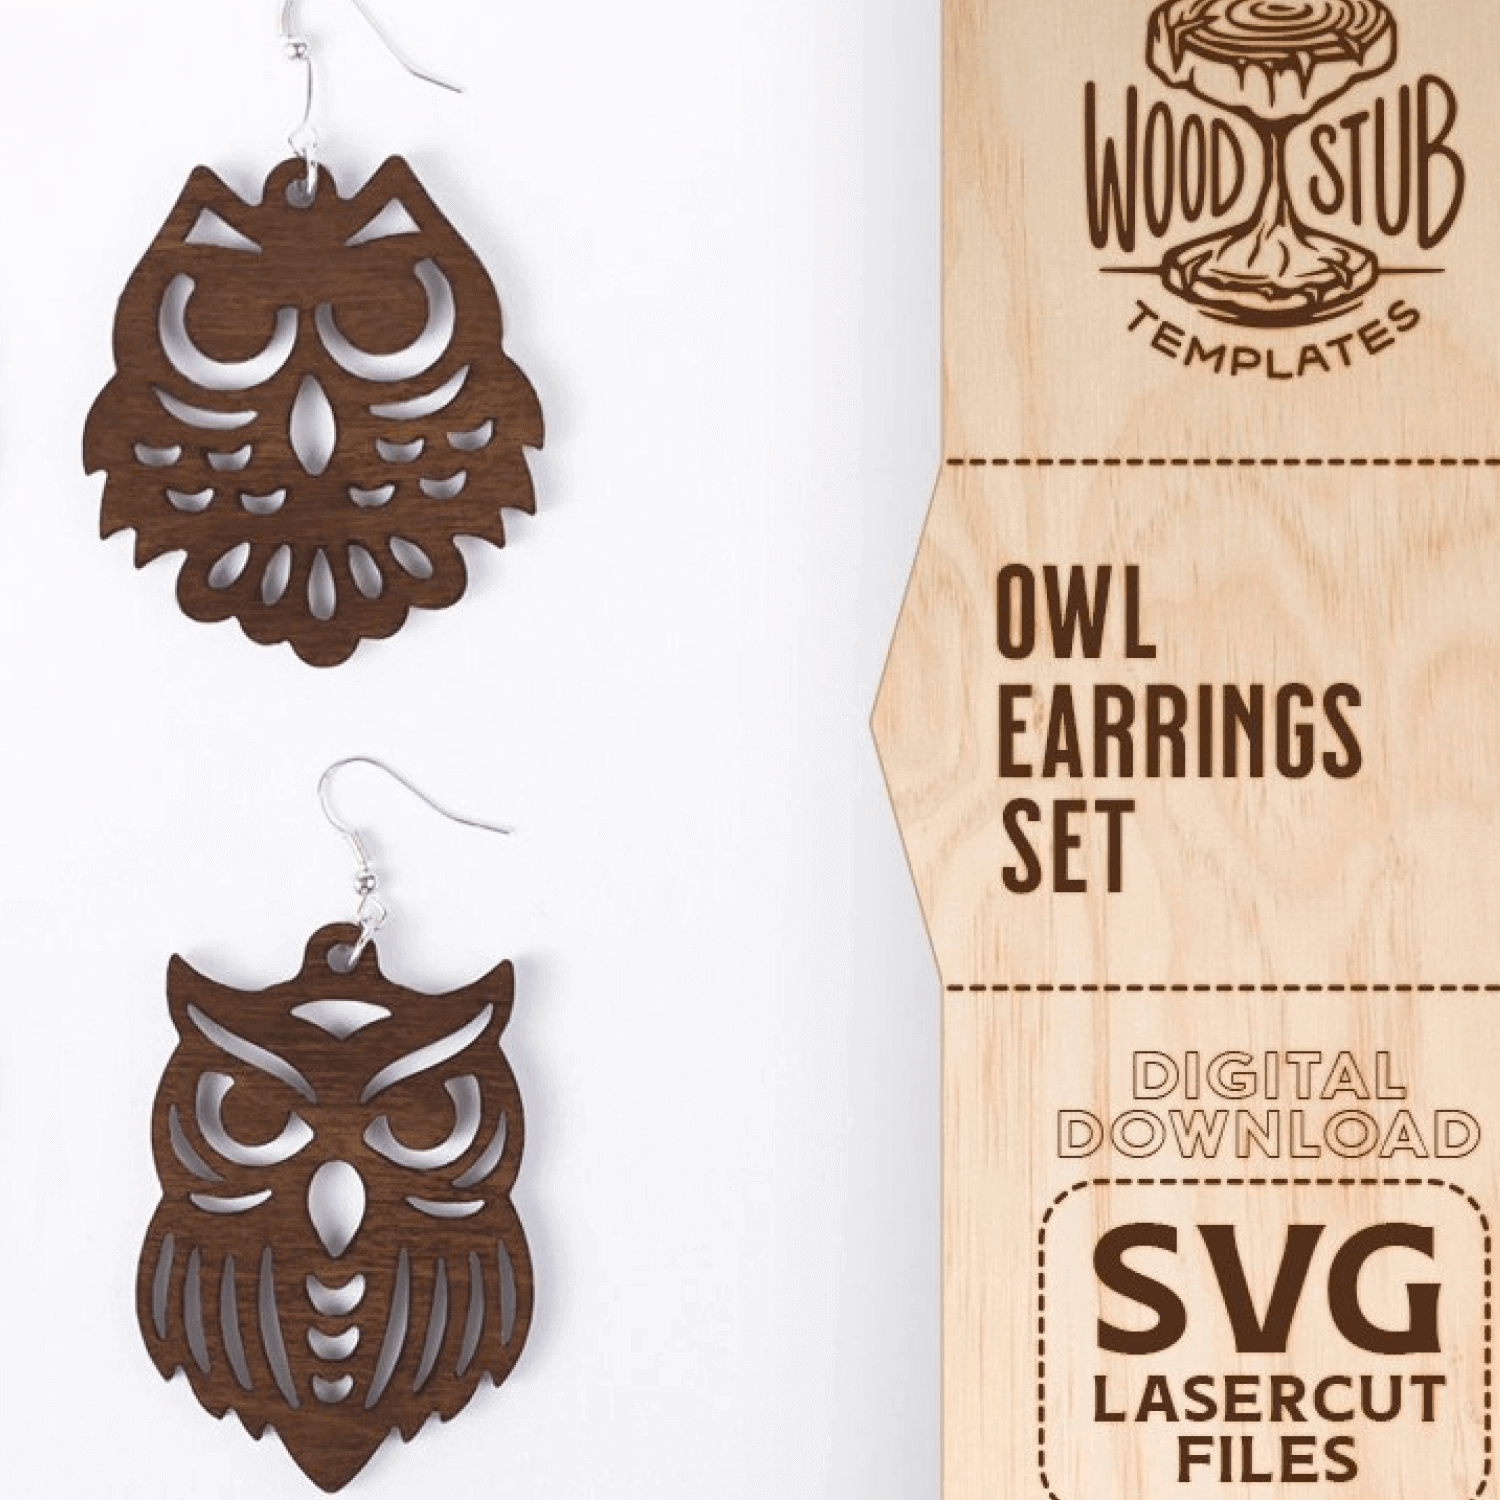 Owl Earrings Set SVG.